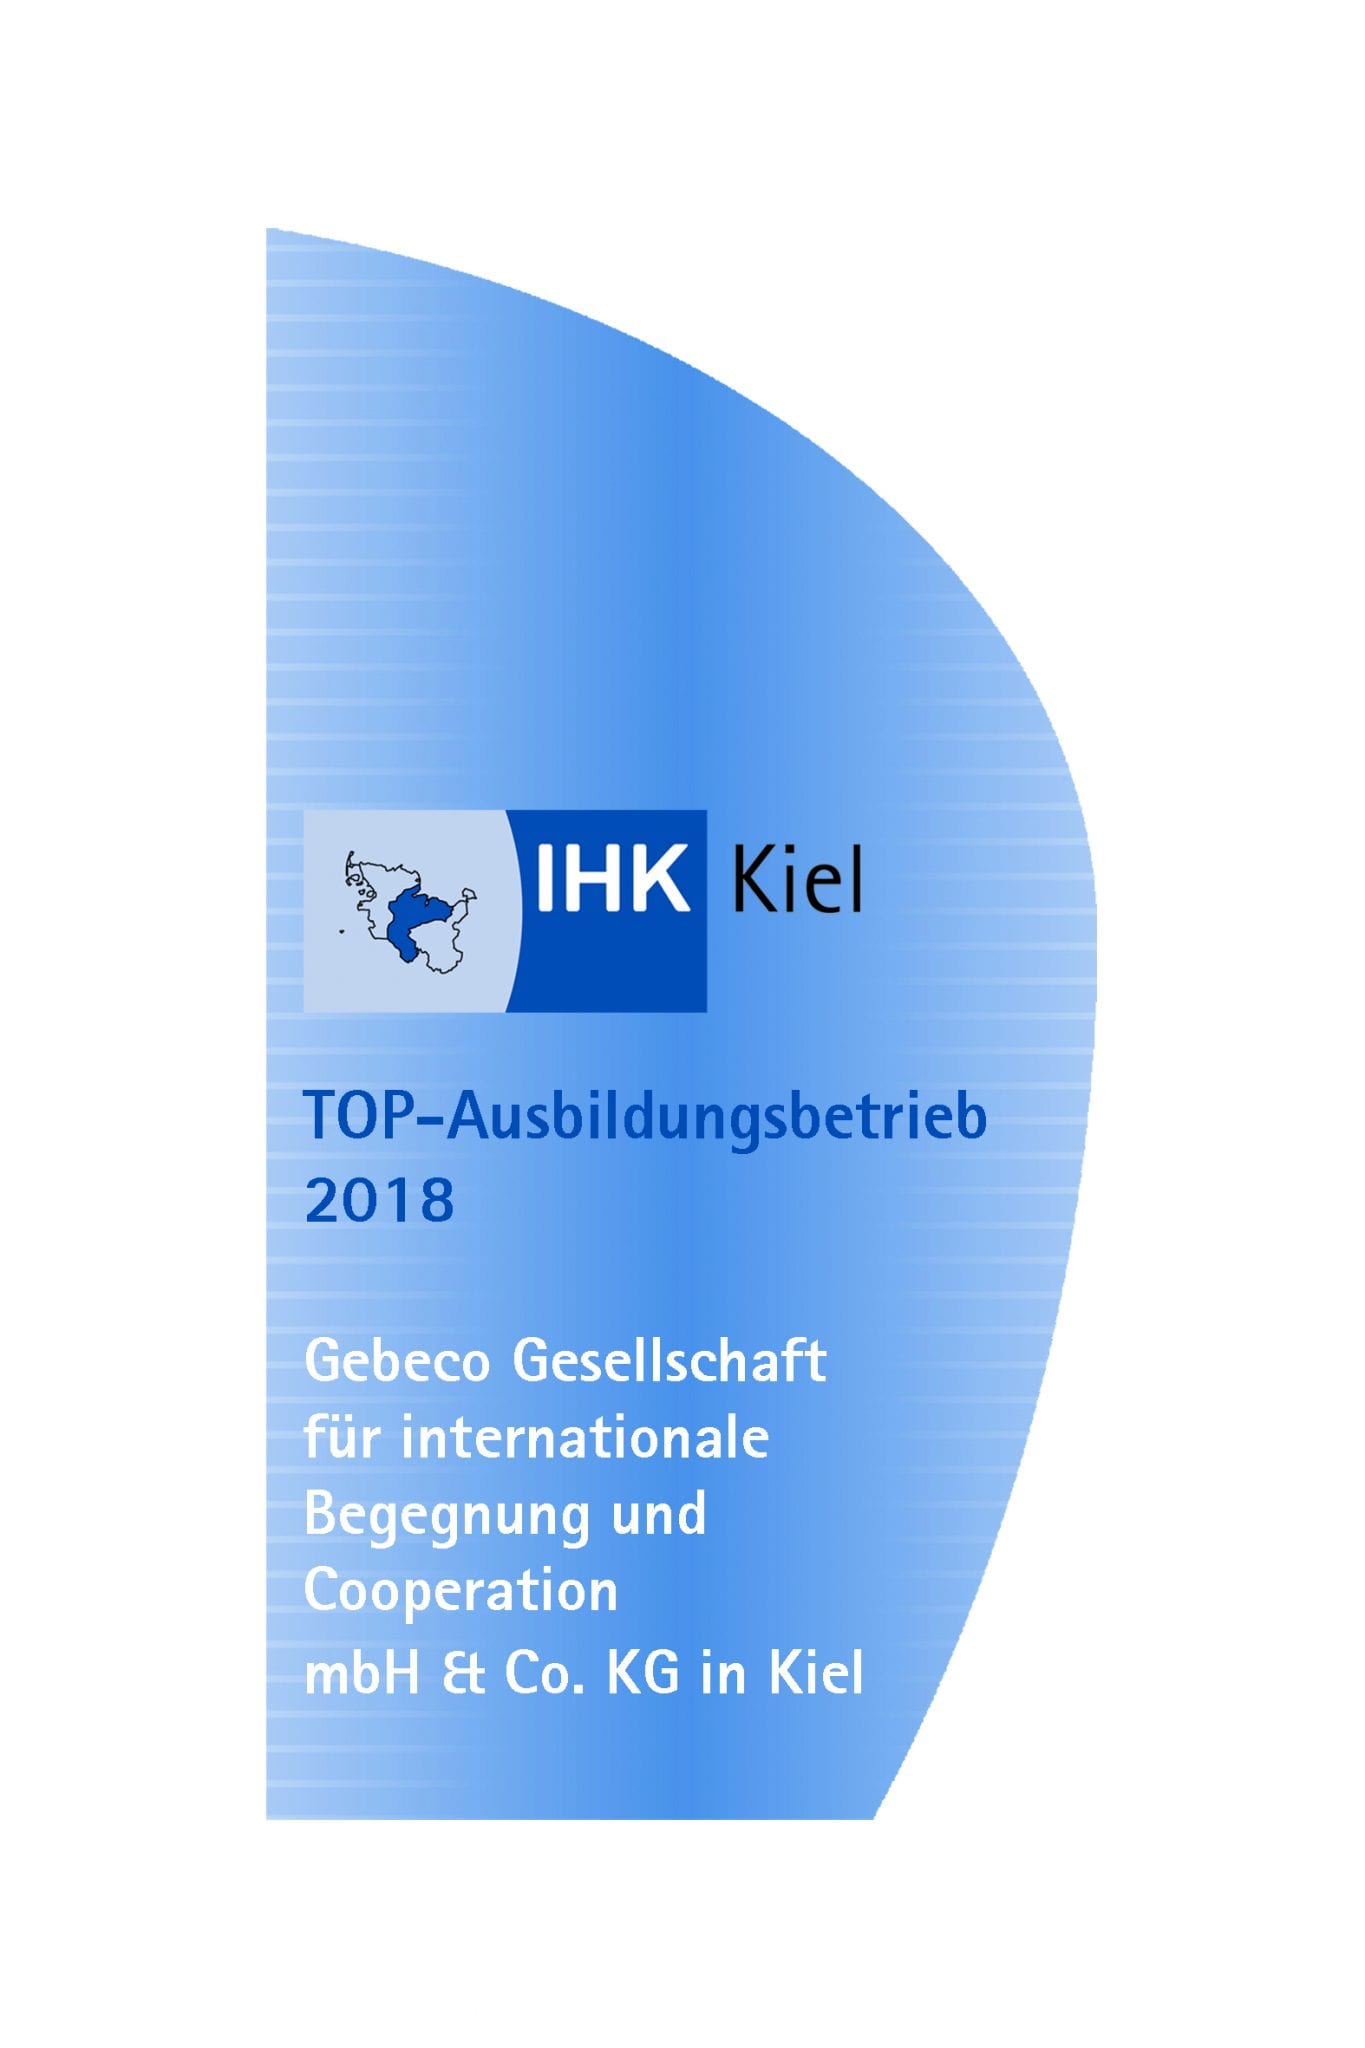 Auszeichnung zum TOP Ausbildungsbetrieb 2018 von der IHK Kiel